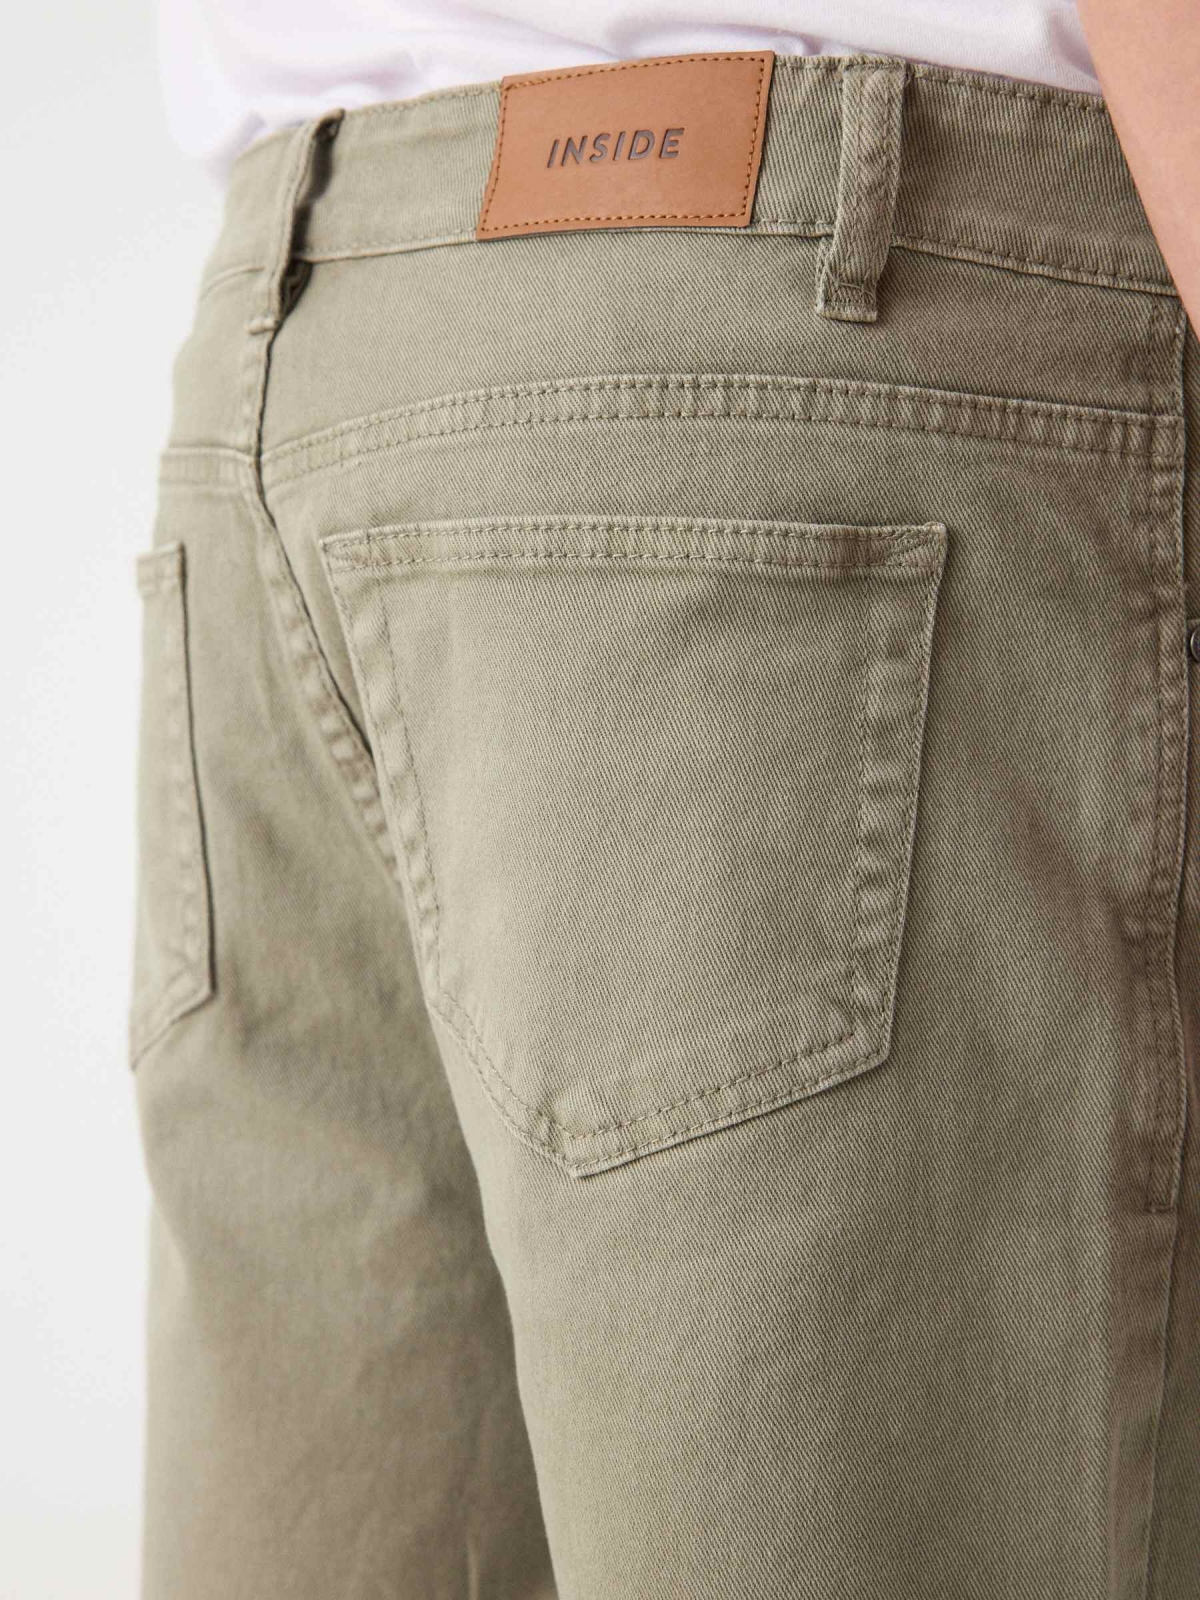 Bermuda jeans com cinco bolsos cáqui vista detalhe